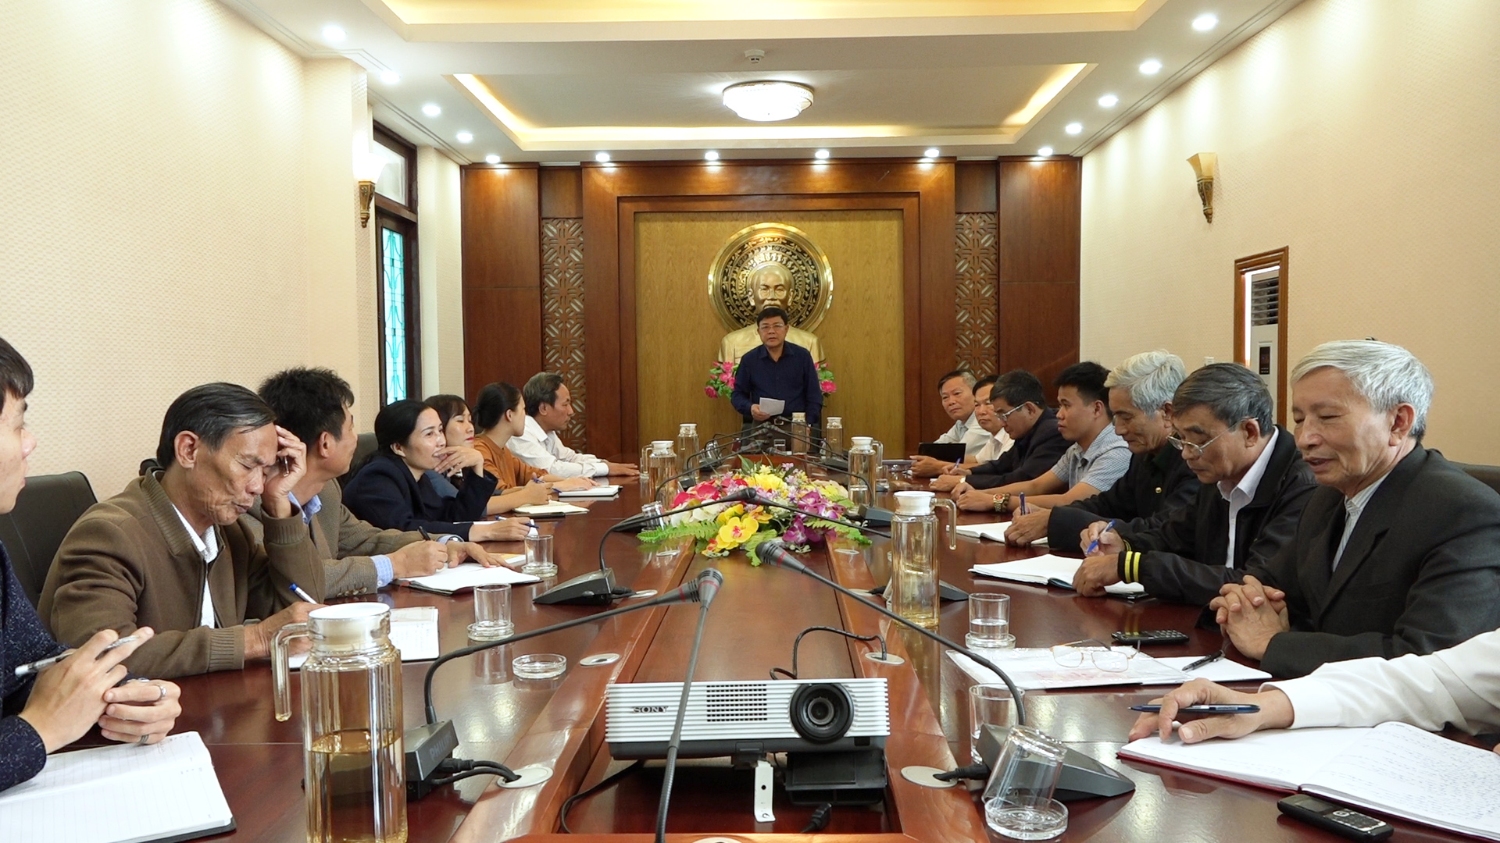 Đồng chí Chủ tịch UBND thị xã Ba Đồn làm việc với các Hội tổ chức xã hội, xã hội - nghề nghiệp trên địa bàn thị xã.